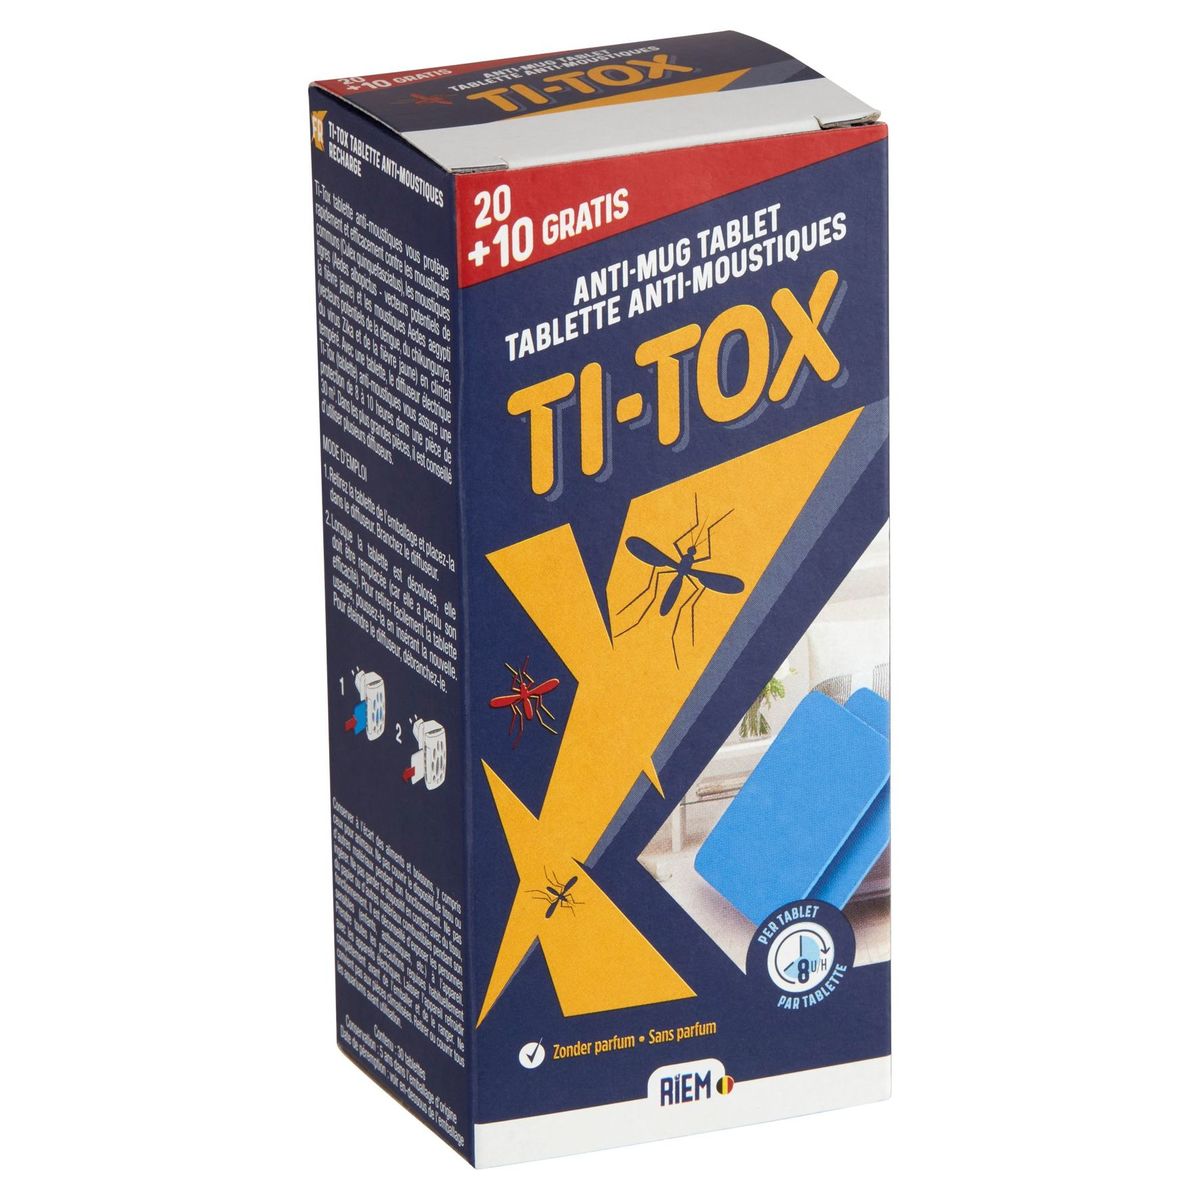 Riem Ti-Tox Tablette Anti-Moustiques - Recharge 20+10 Gratis